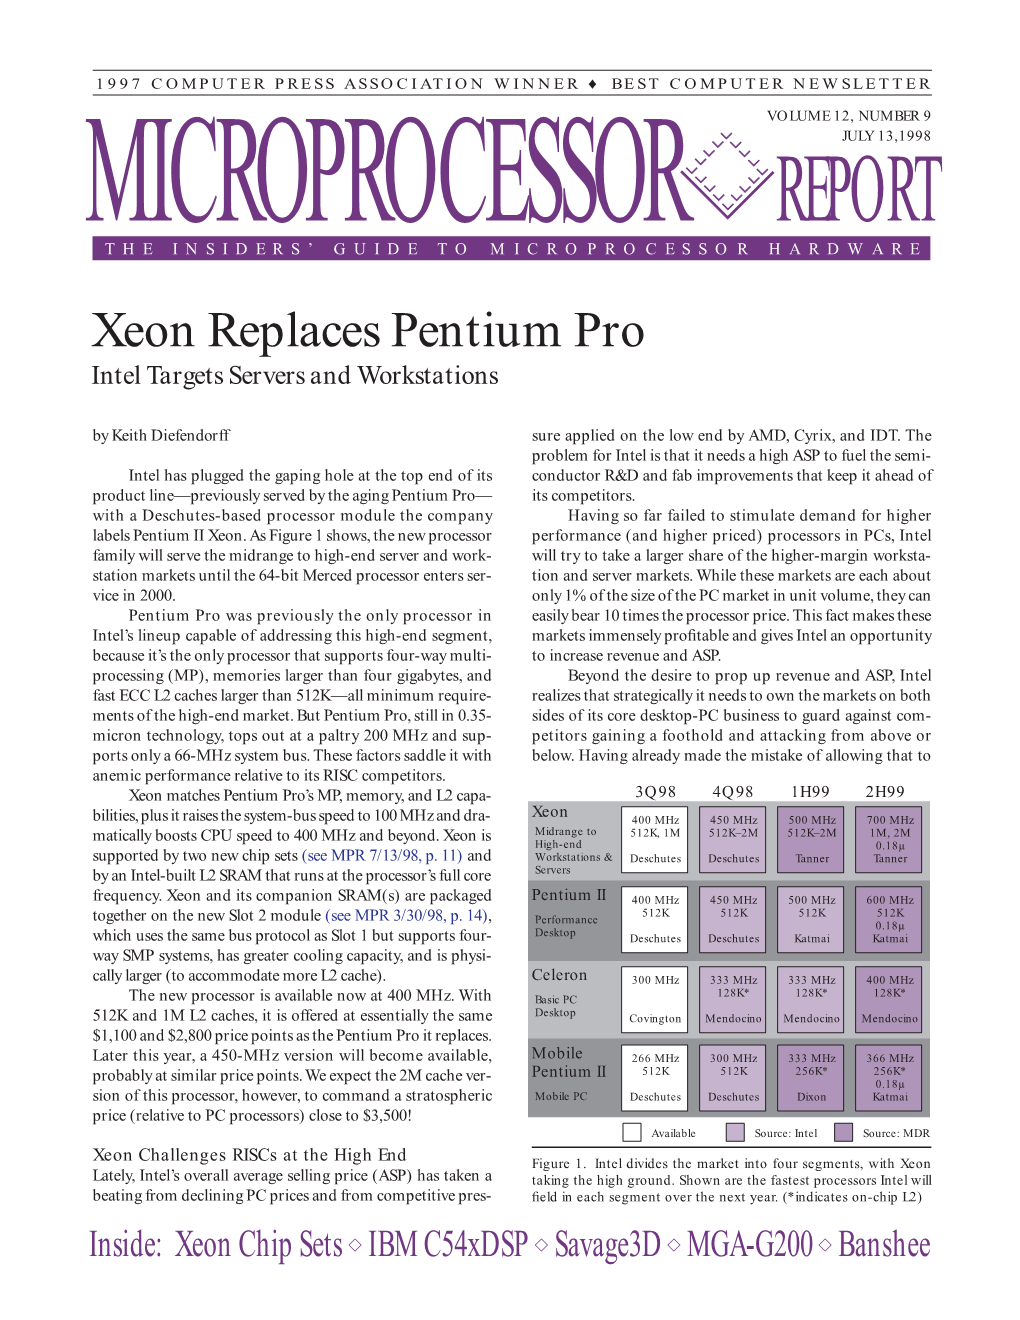 Xeon Replaces Pentium Pro: 7/13/98